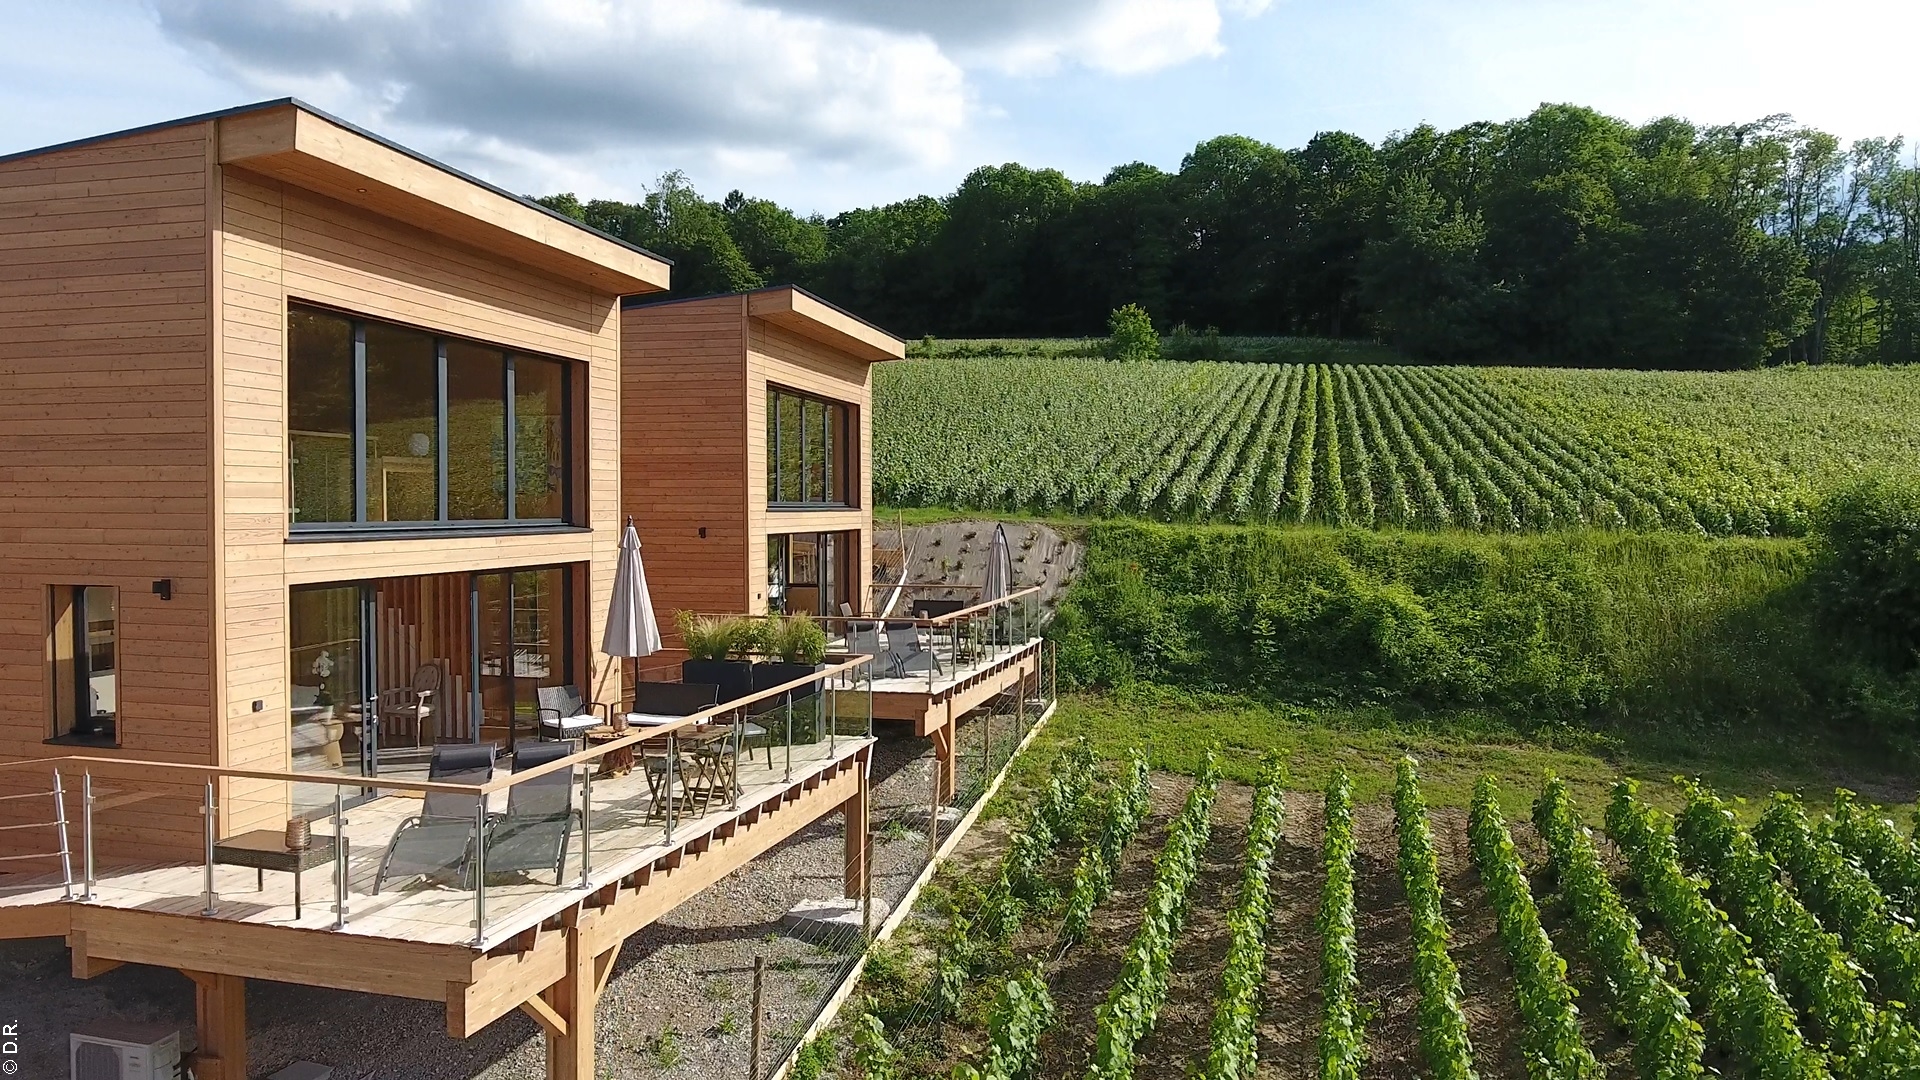 Les cottages Antoinette : un écolodge au cœur des vignes, près de Reims